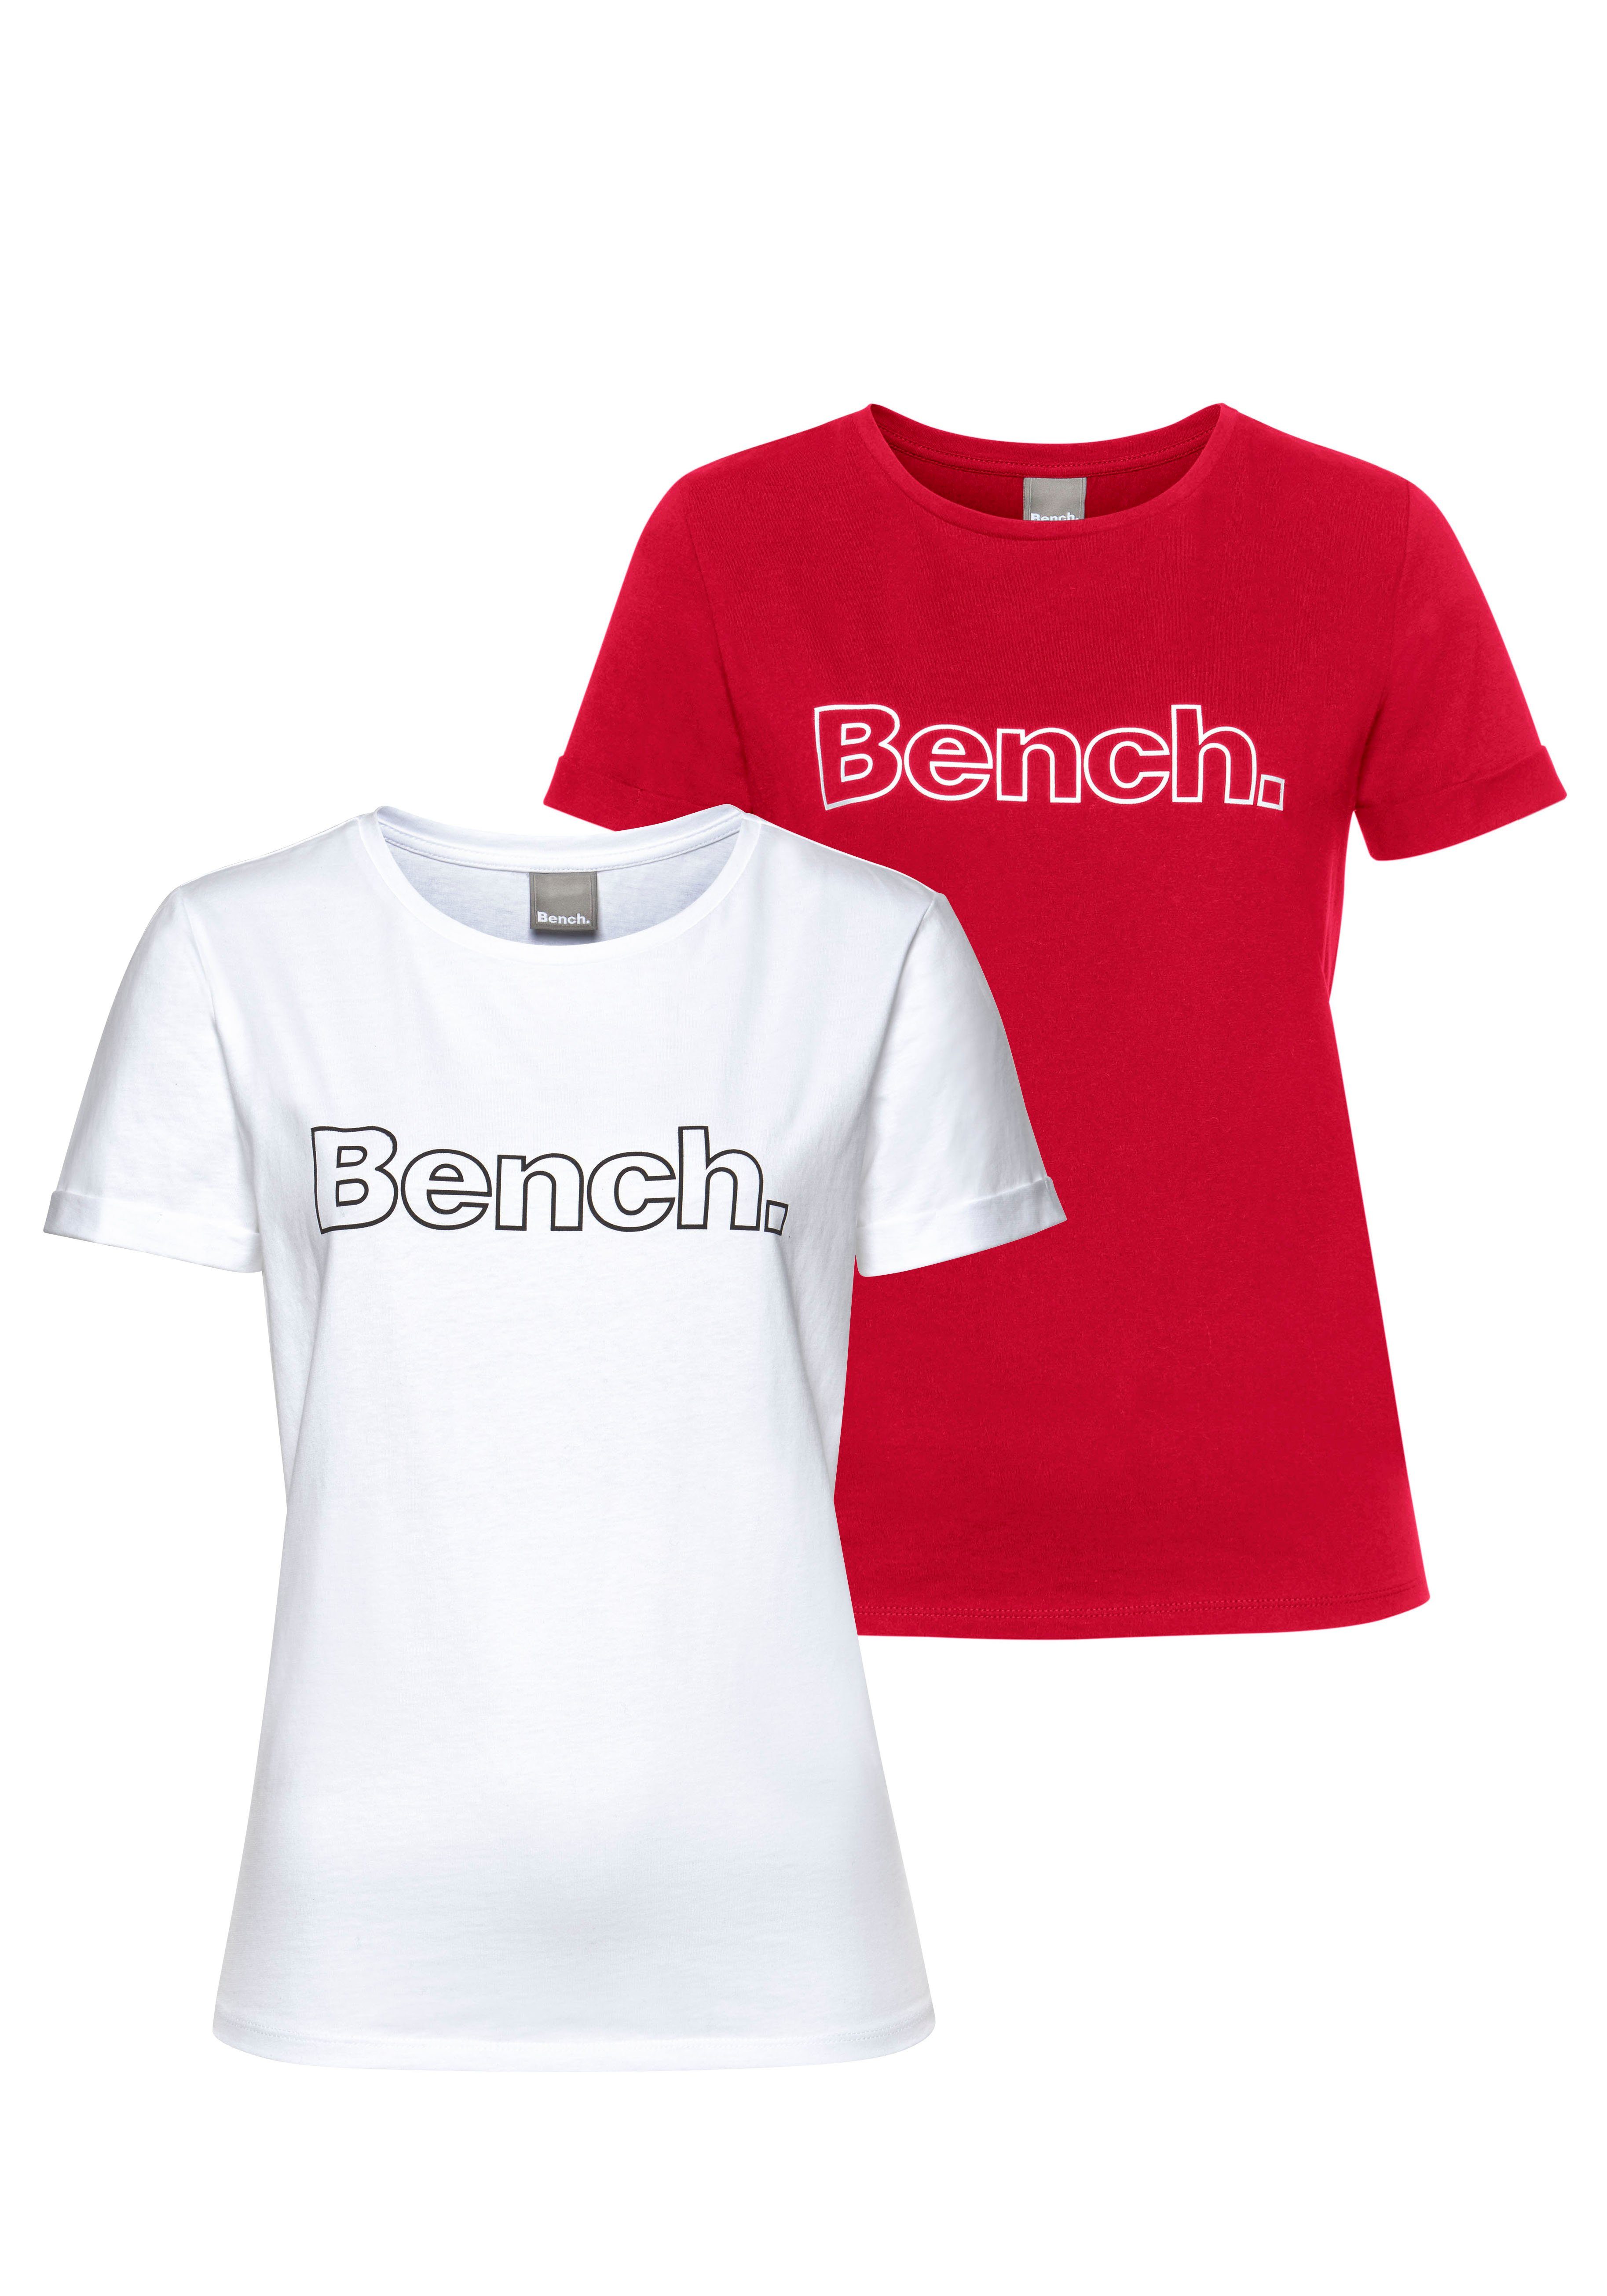 Bench. T-Shirt online kaufen | OTTO